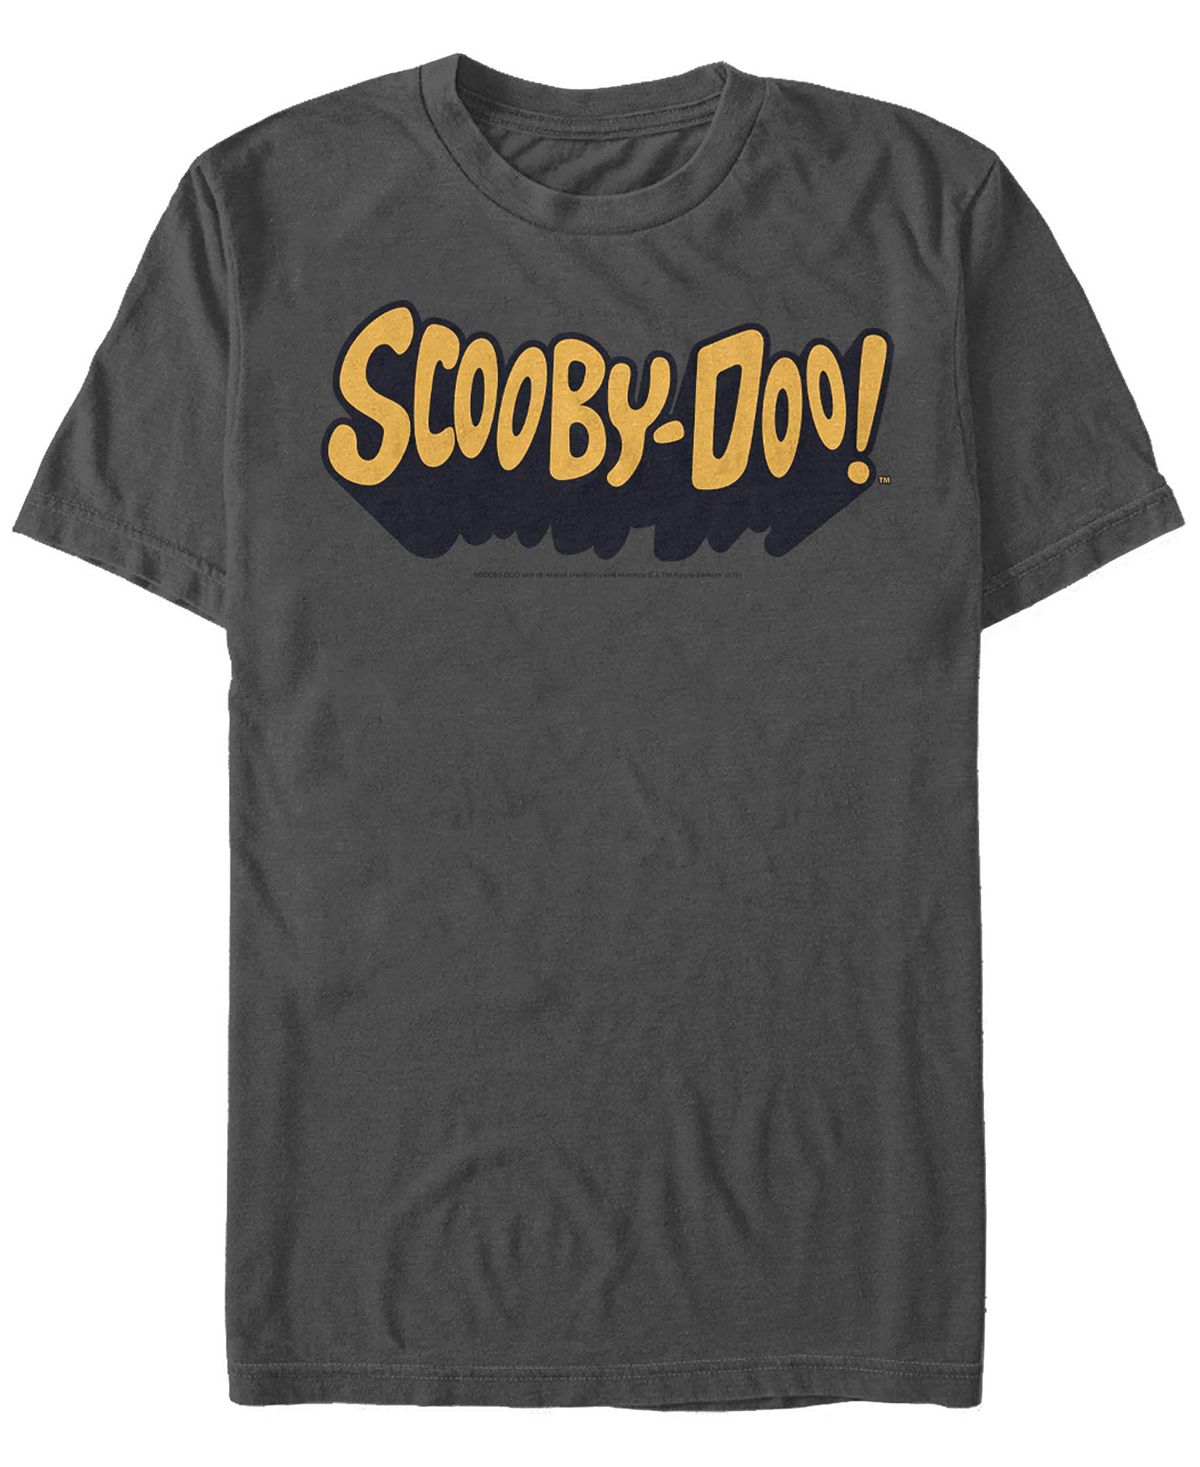 Мужская футболка scooby doo с классическим логотипом и коротким рукавом Fifth Sun, мульти мужская футболка с коротким рукавом scaredy shaggy zoinks scooby doo fifth sun черный